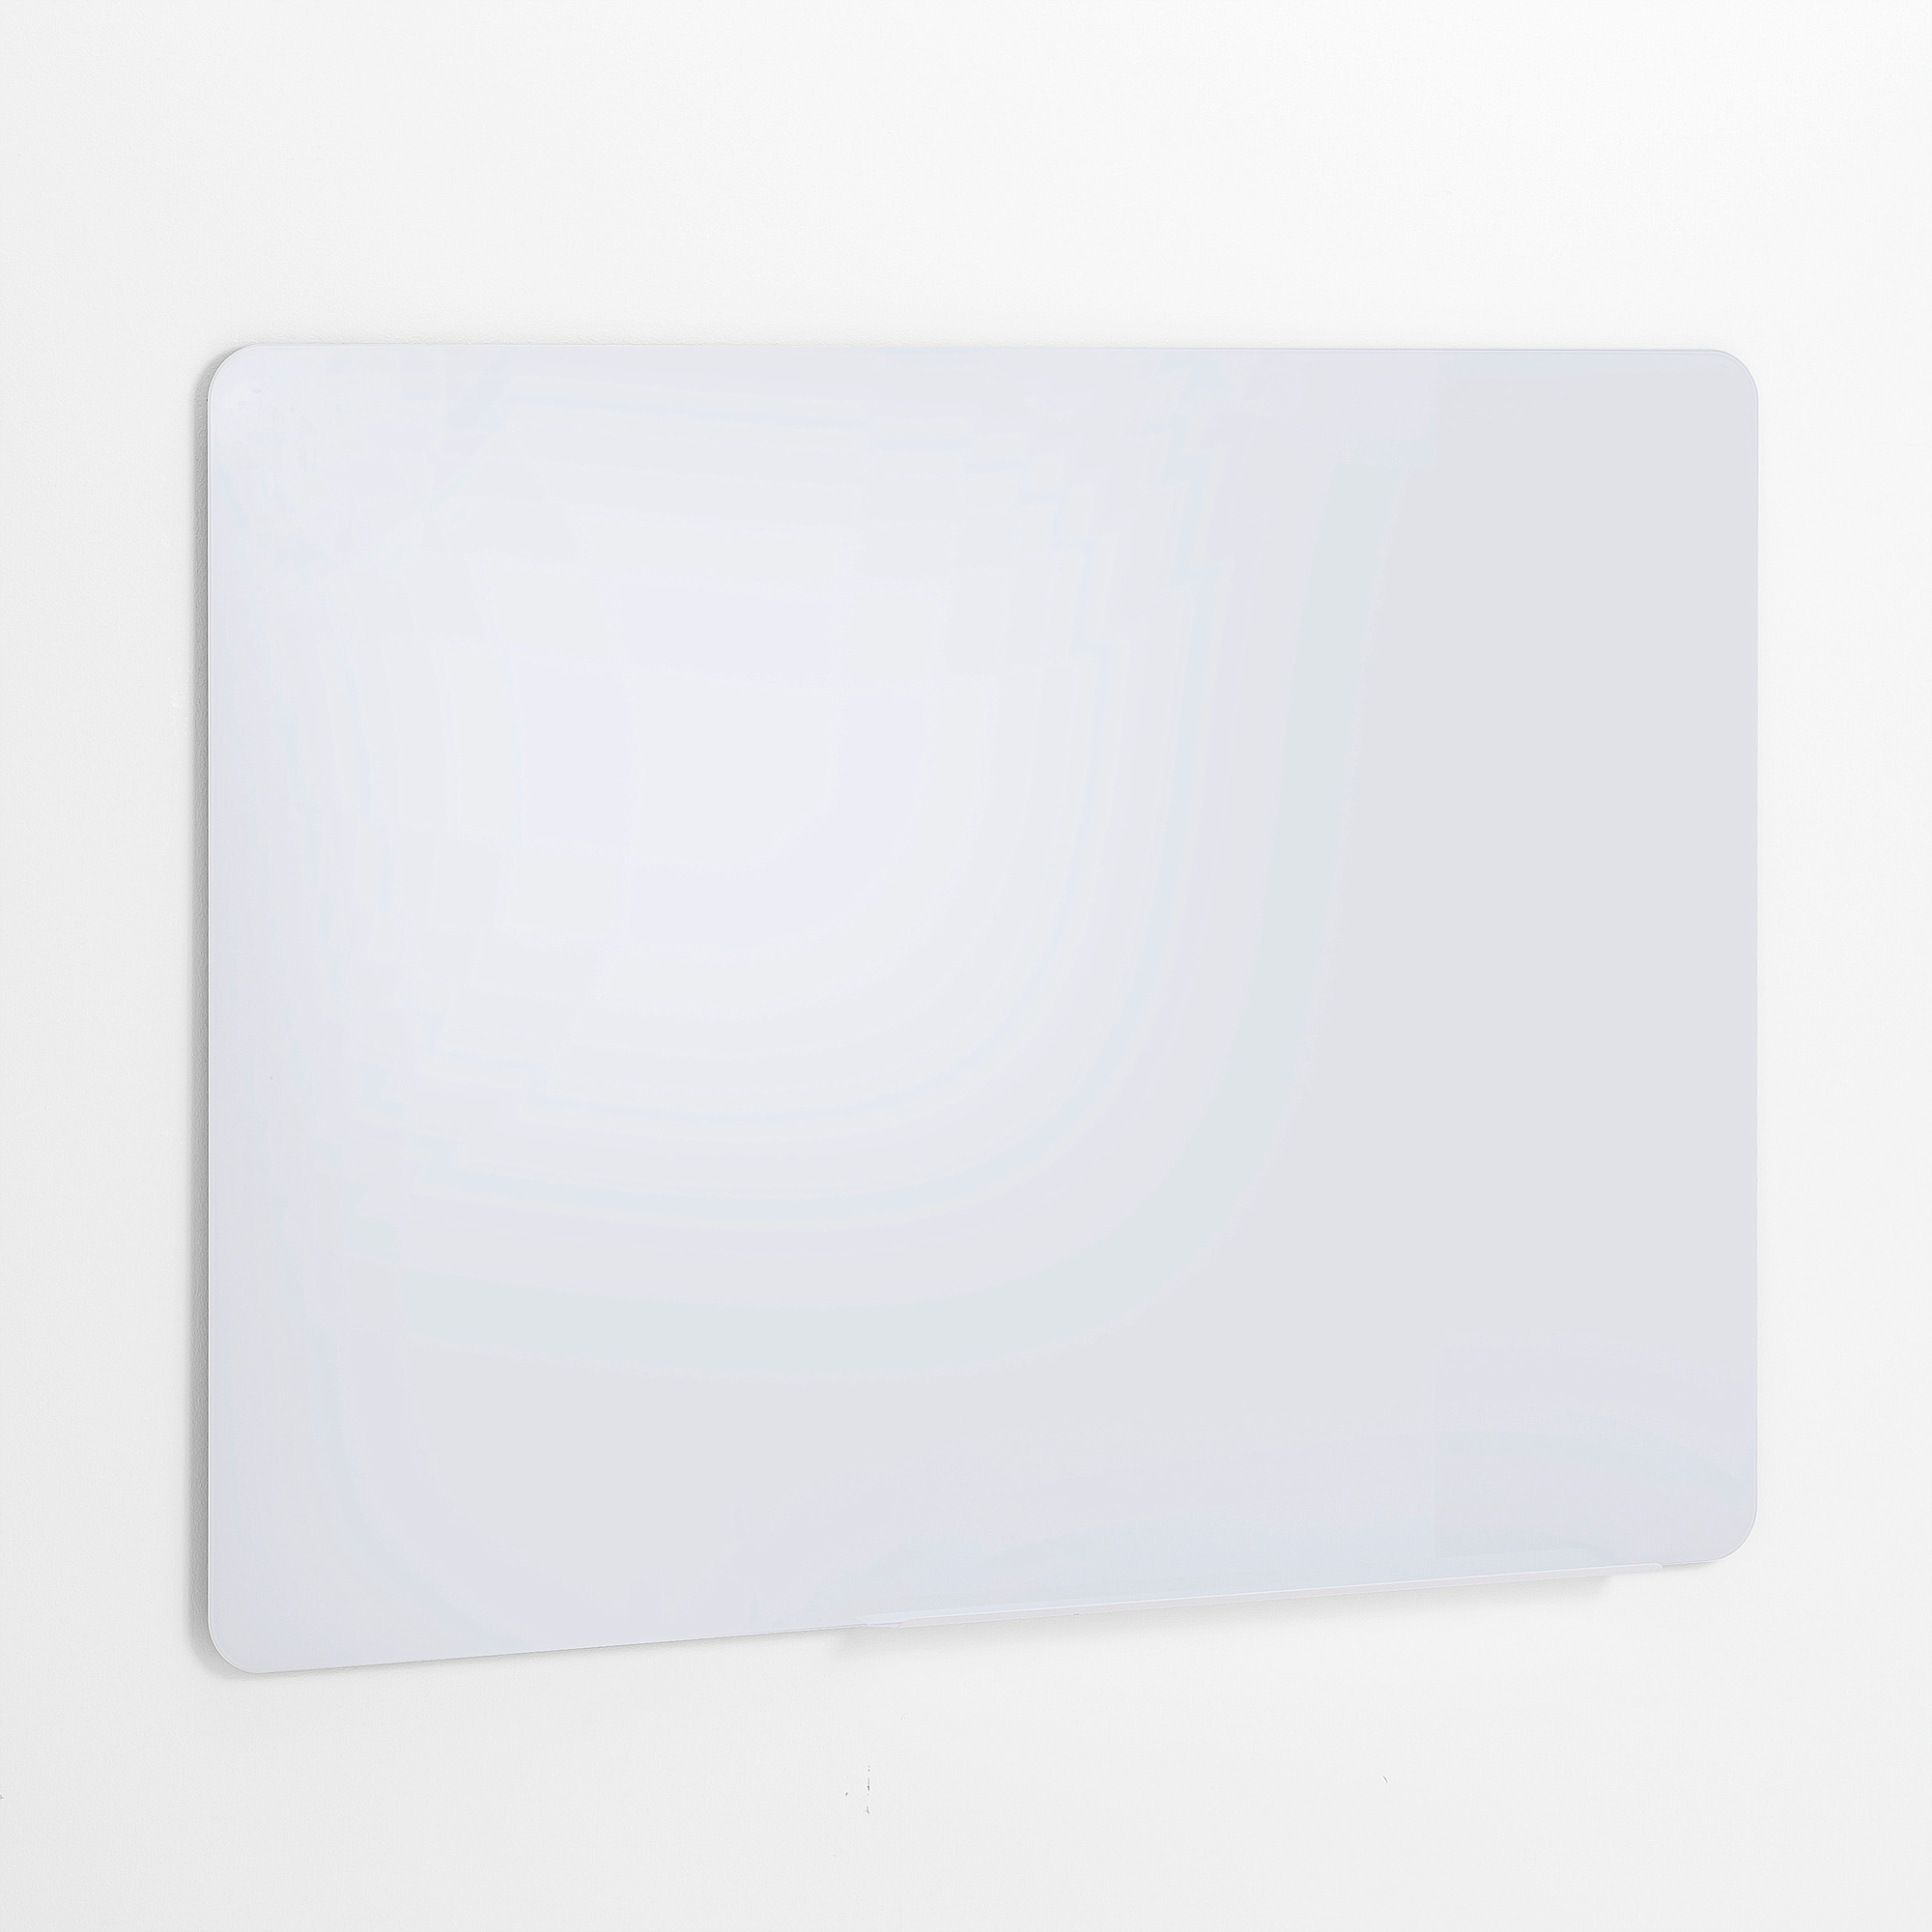 Skleněná tabule GLENDA, 1200x900 mm, bílá